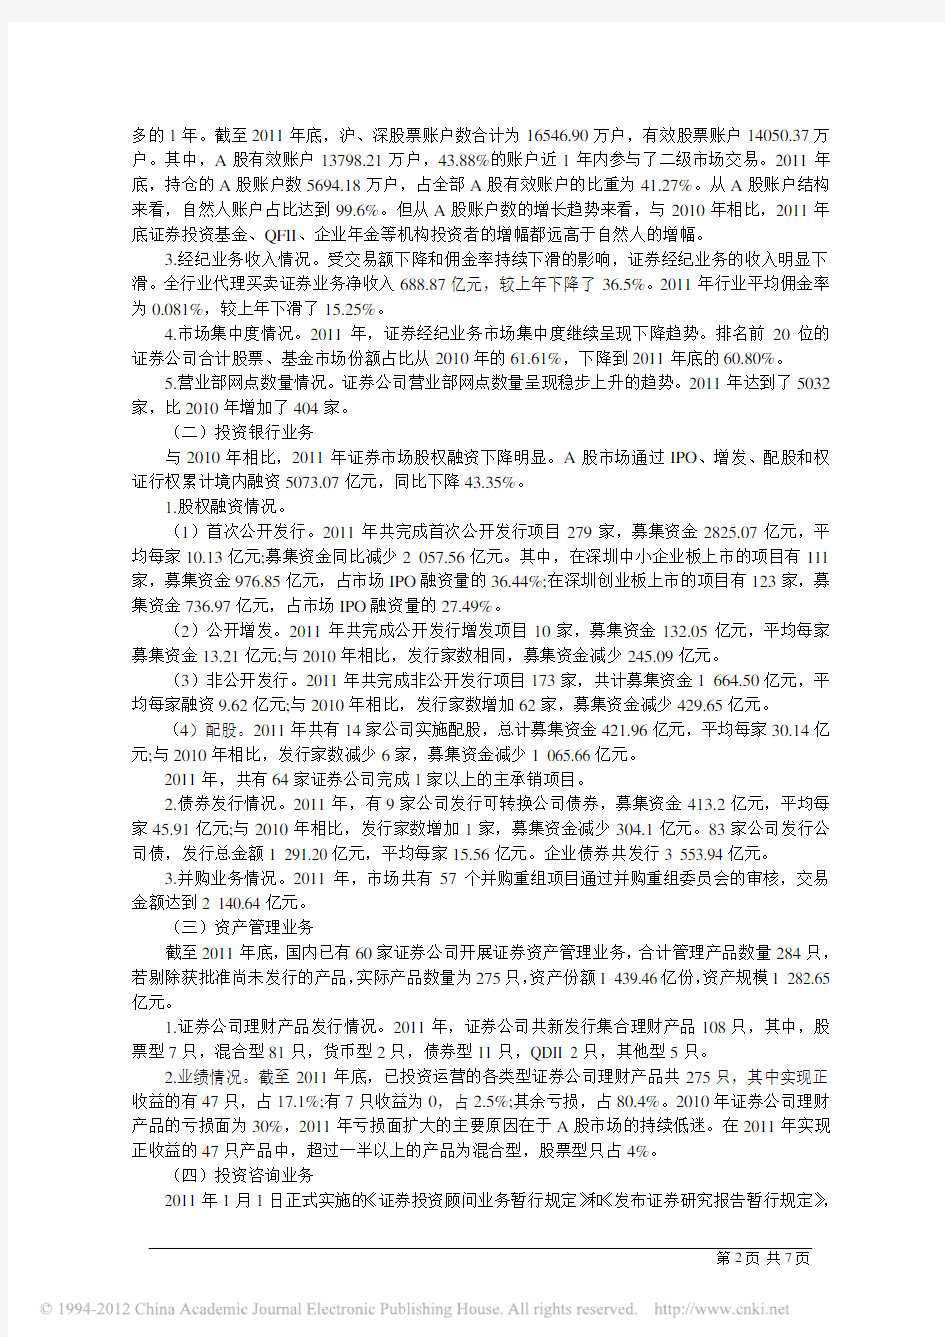 中国证券业发展报告(2012年)